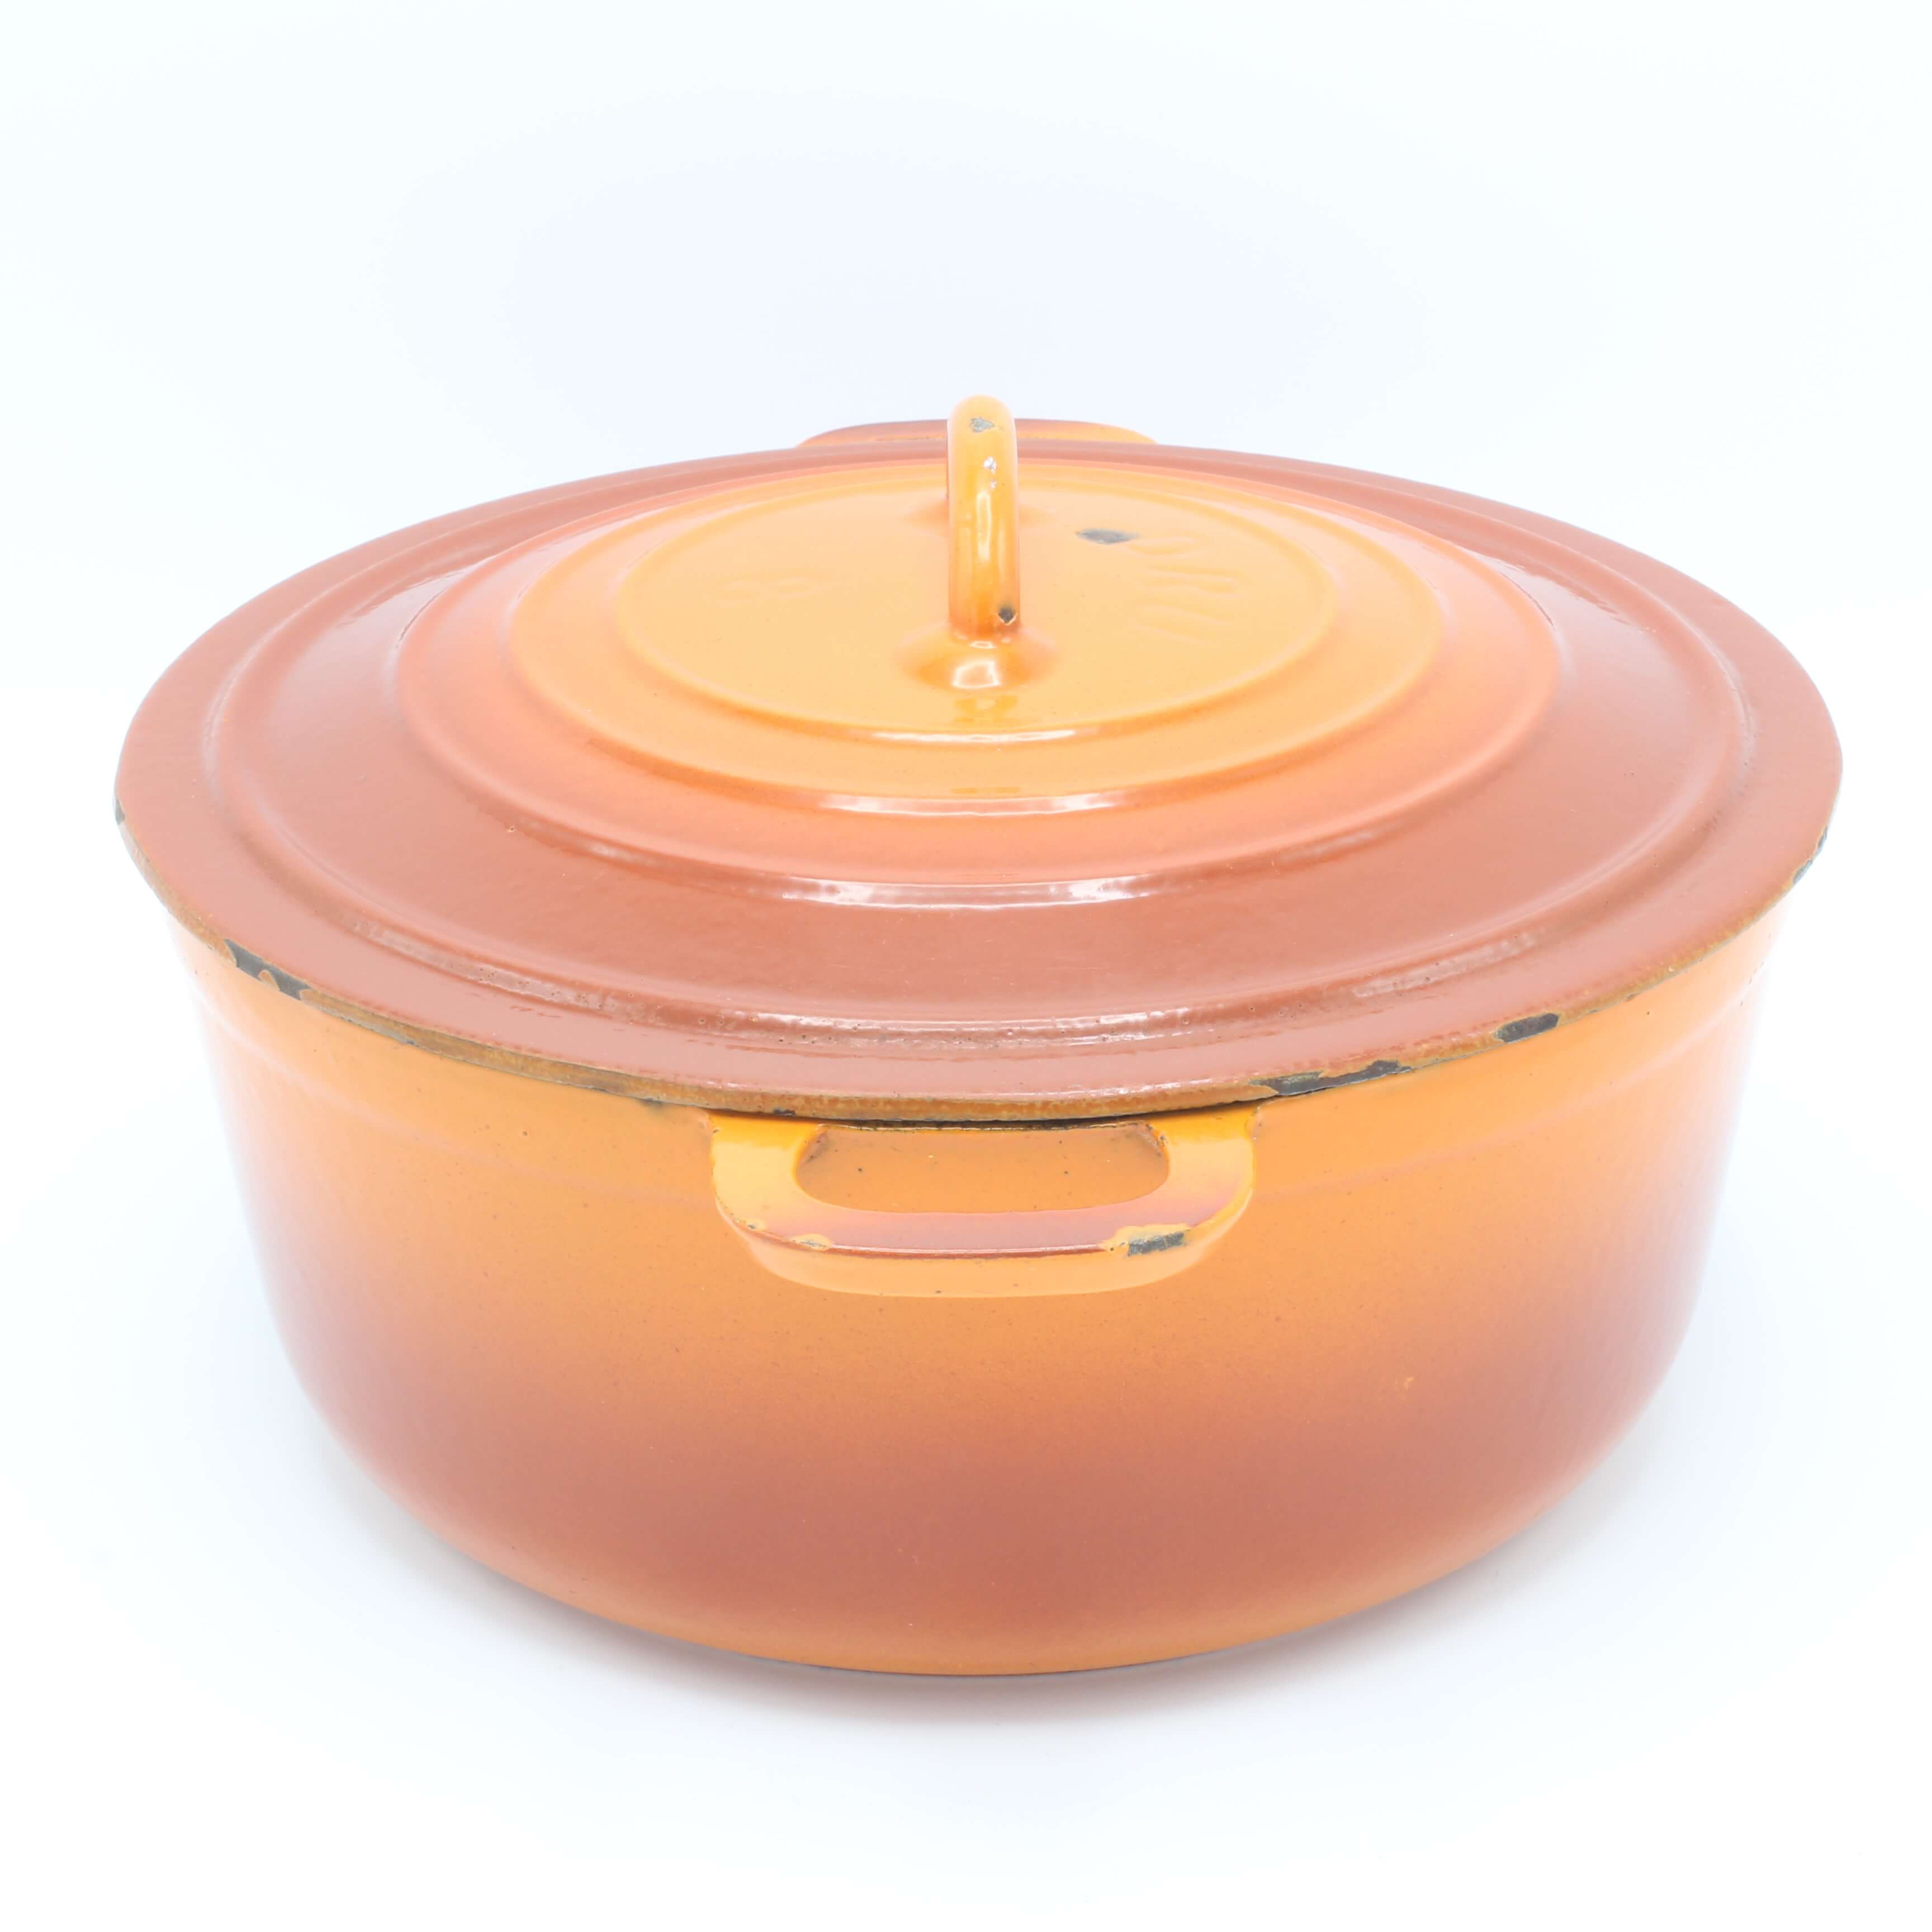 Voor u emotioneel nietig DRU gietijzeren braadpan, No.8 oranjerood 22 cm • Gaer Cookware